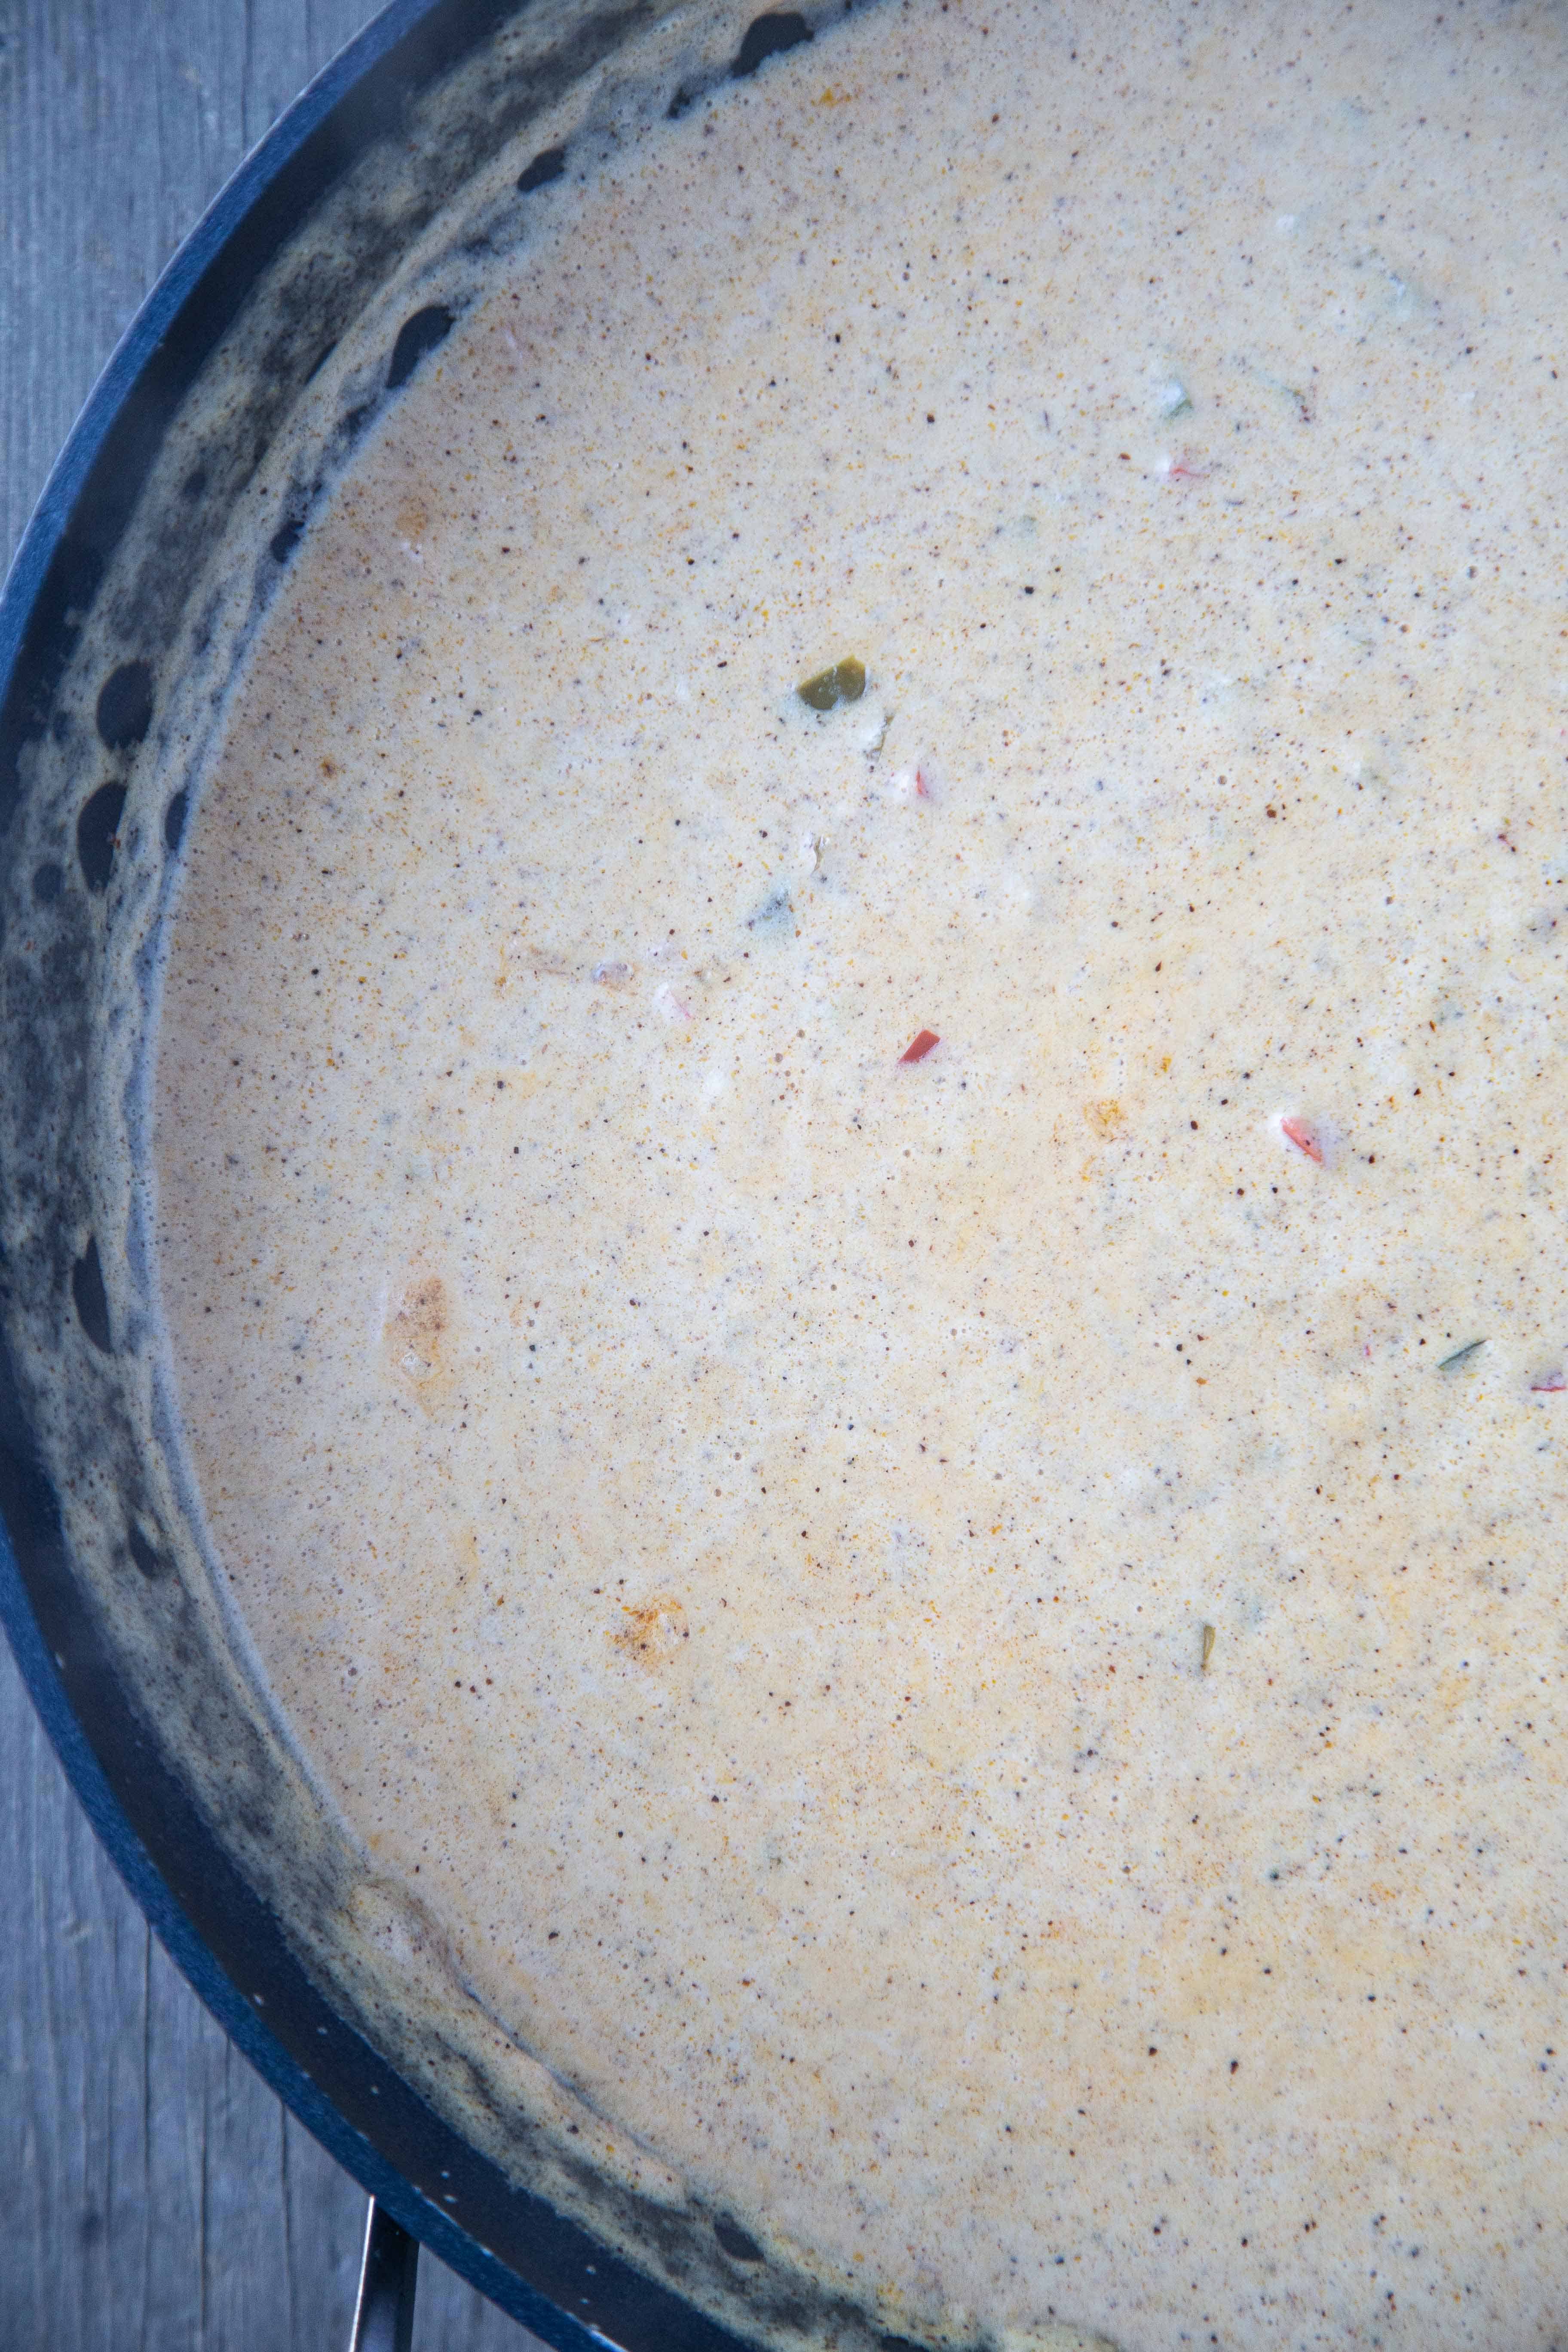 creamy sauce cooking in a sauté pan